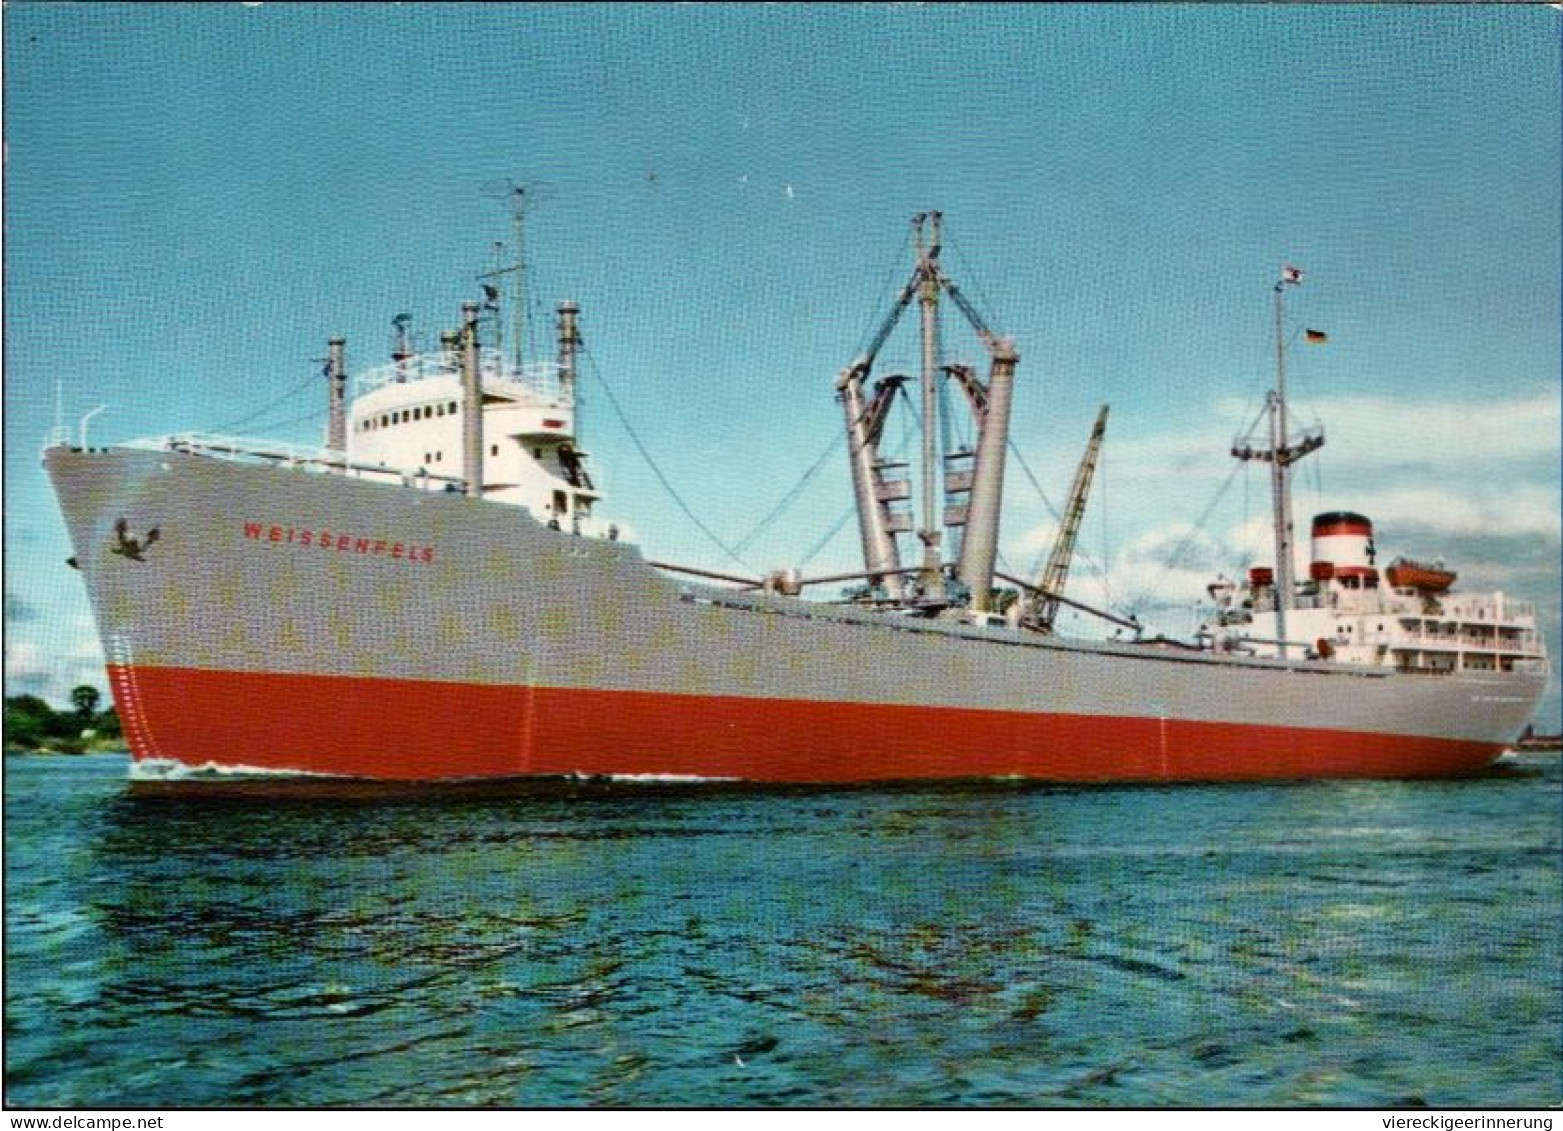 ! Ansichtskarte Ship, DDSG Hansa Bremen, Schiff MS Weissenfels, Frachter - Cargos